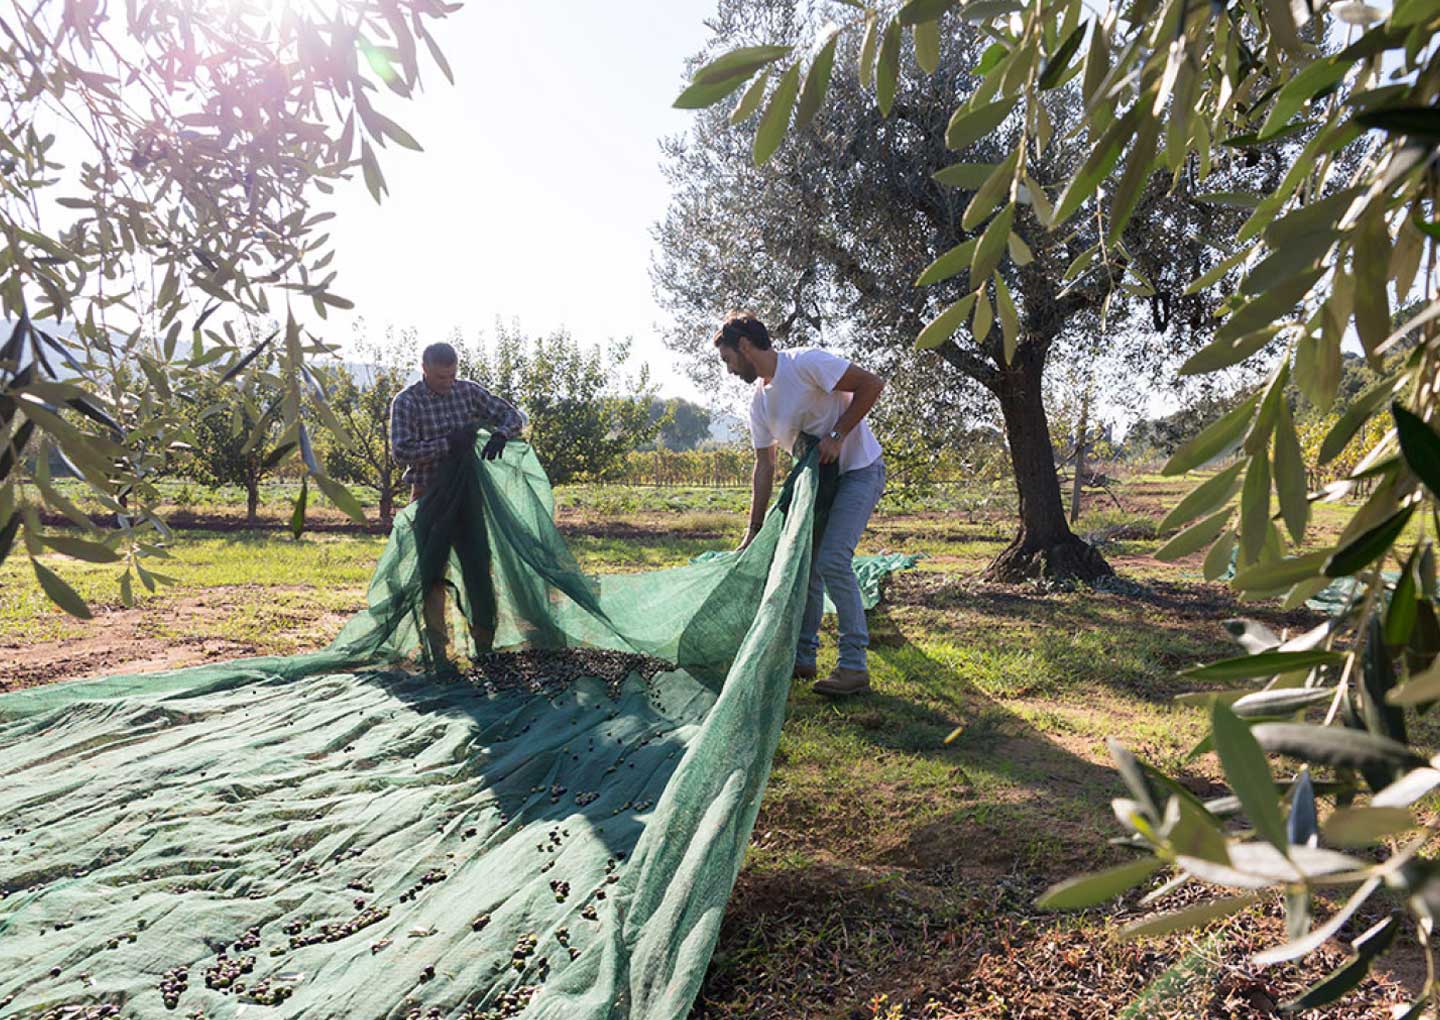 certified origins olive harvesting